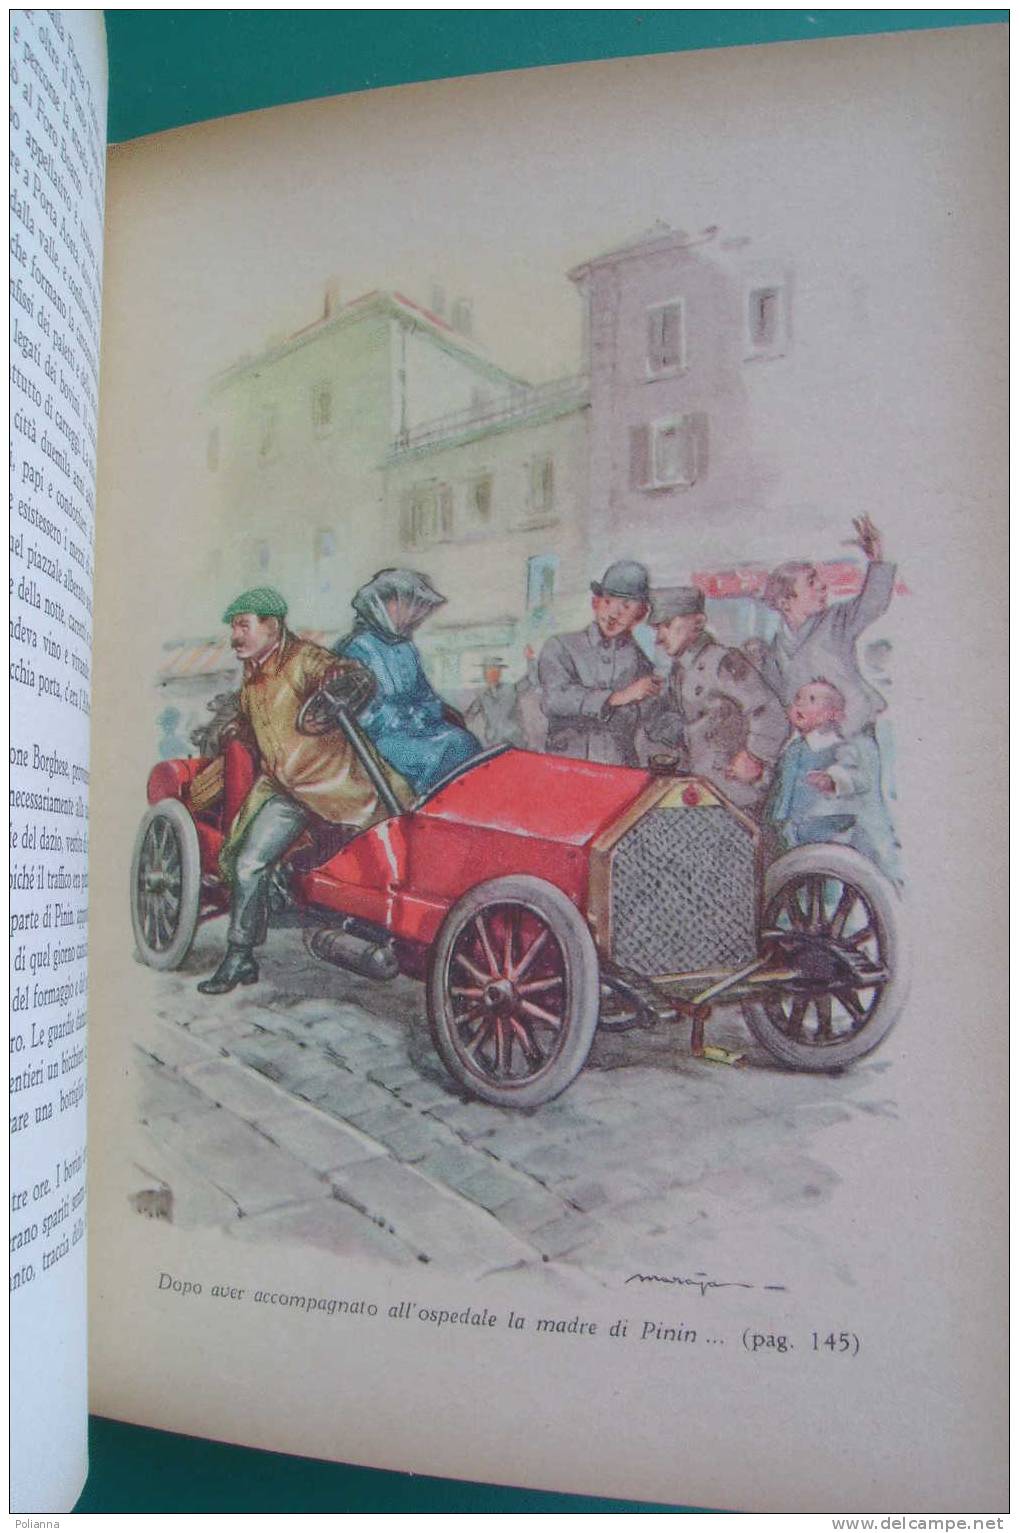 PDC/39 S.Gotta LA STRADA DI FUOCO-automobilismo Eroico 1898-1908. Ed. Fabbri Anni '50/Illustrazioni Di Maraja - Old